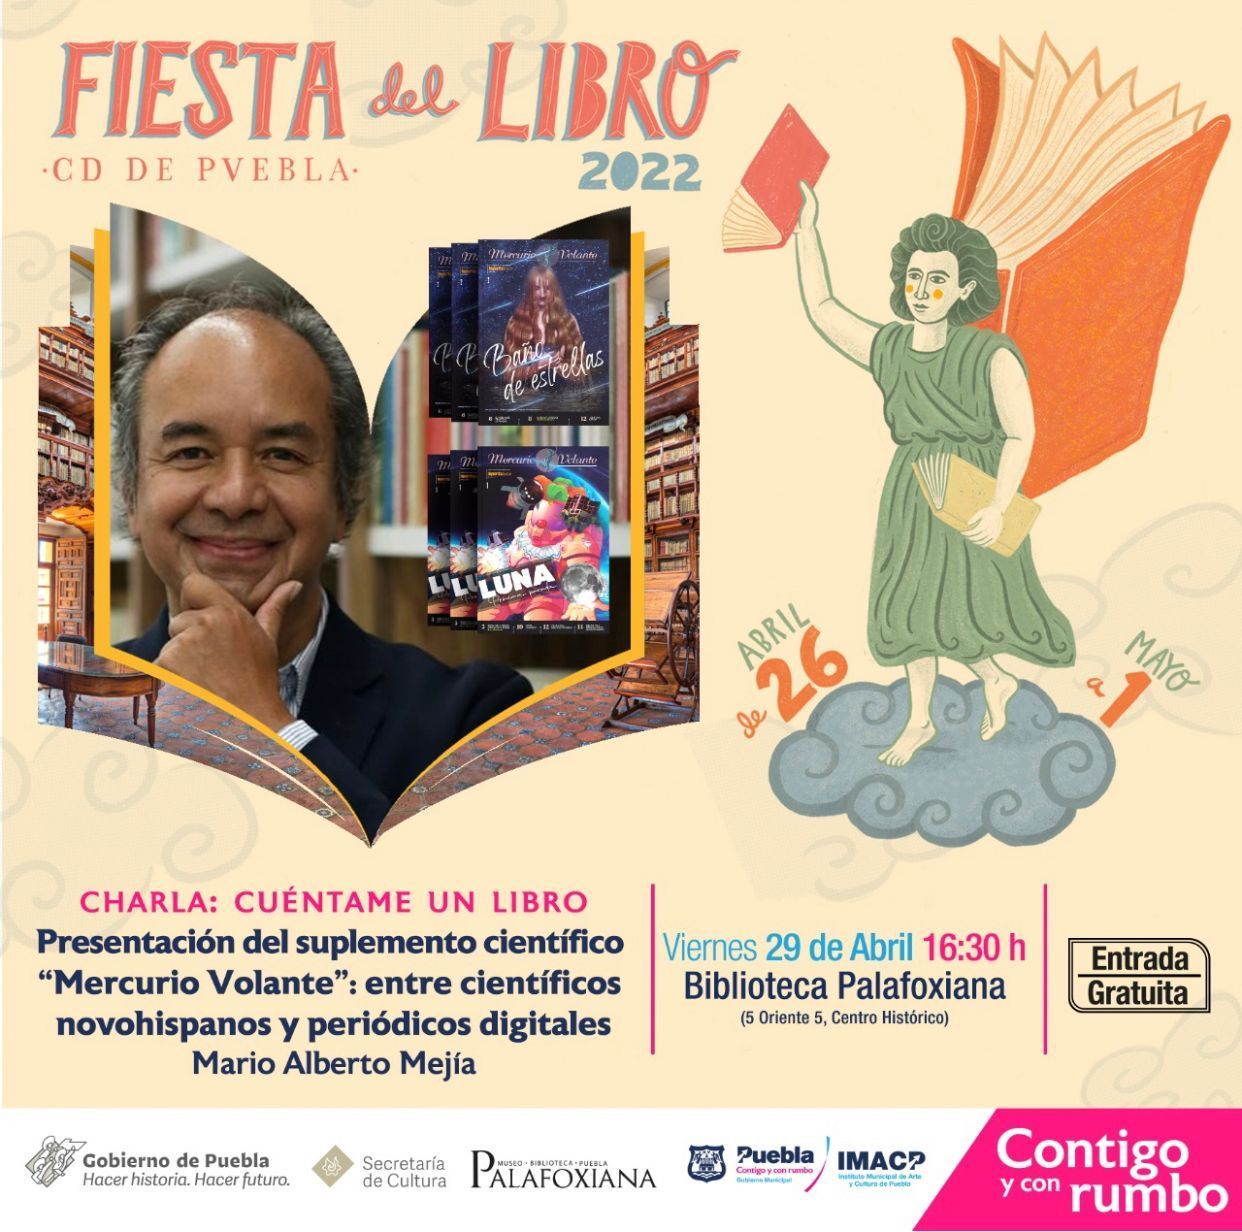 Fiesta del libro Puebla